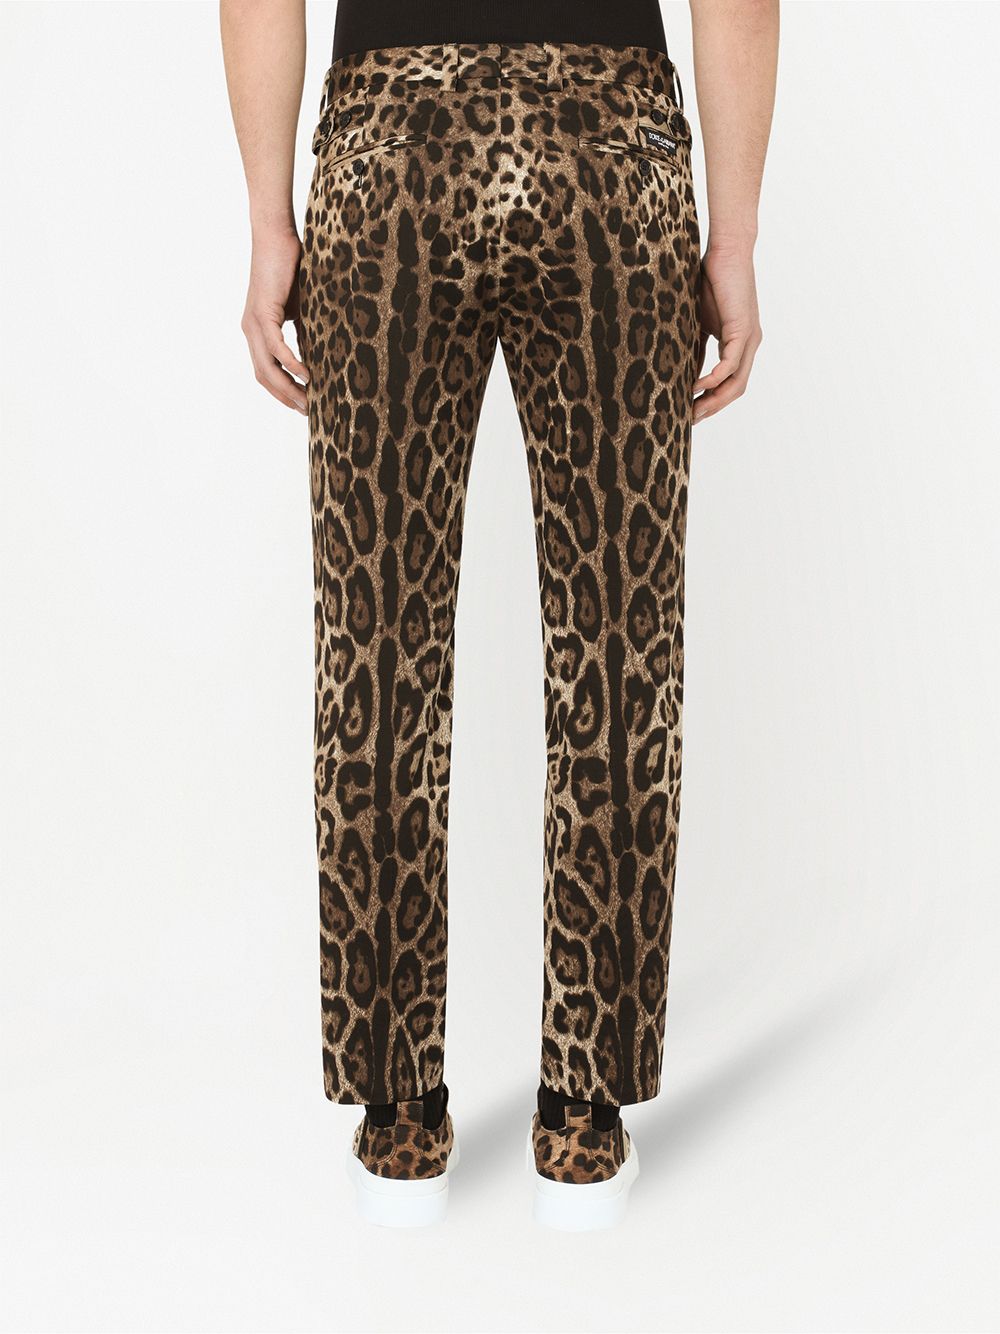 фото Dolce & gabbana прямые брюки с леопардовым принтом